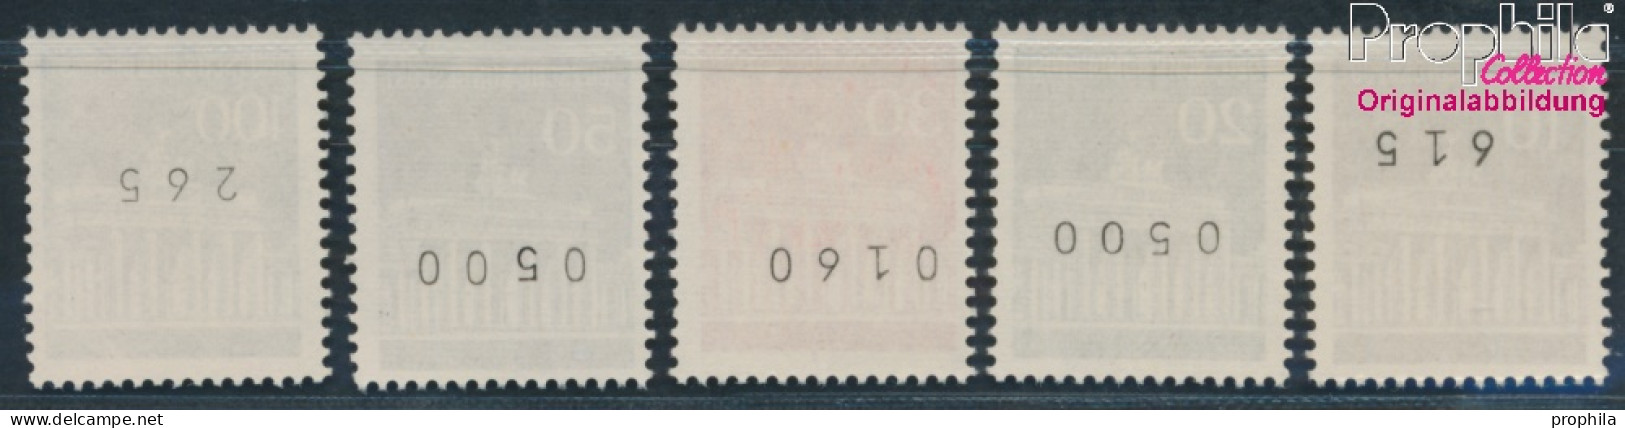 BRD 506w R-510w R Mit Zählnummer (kpl.) Matte Gummierung Postfrisch 1966 Brandenburger Tor (10348150 - Neufs